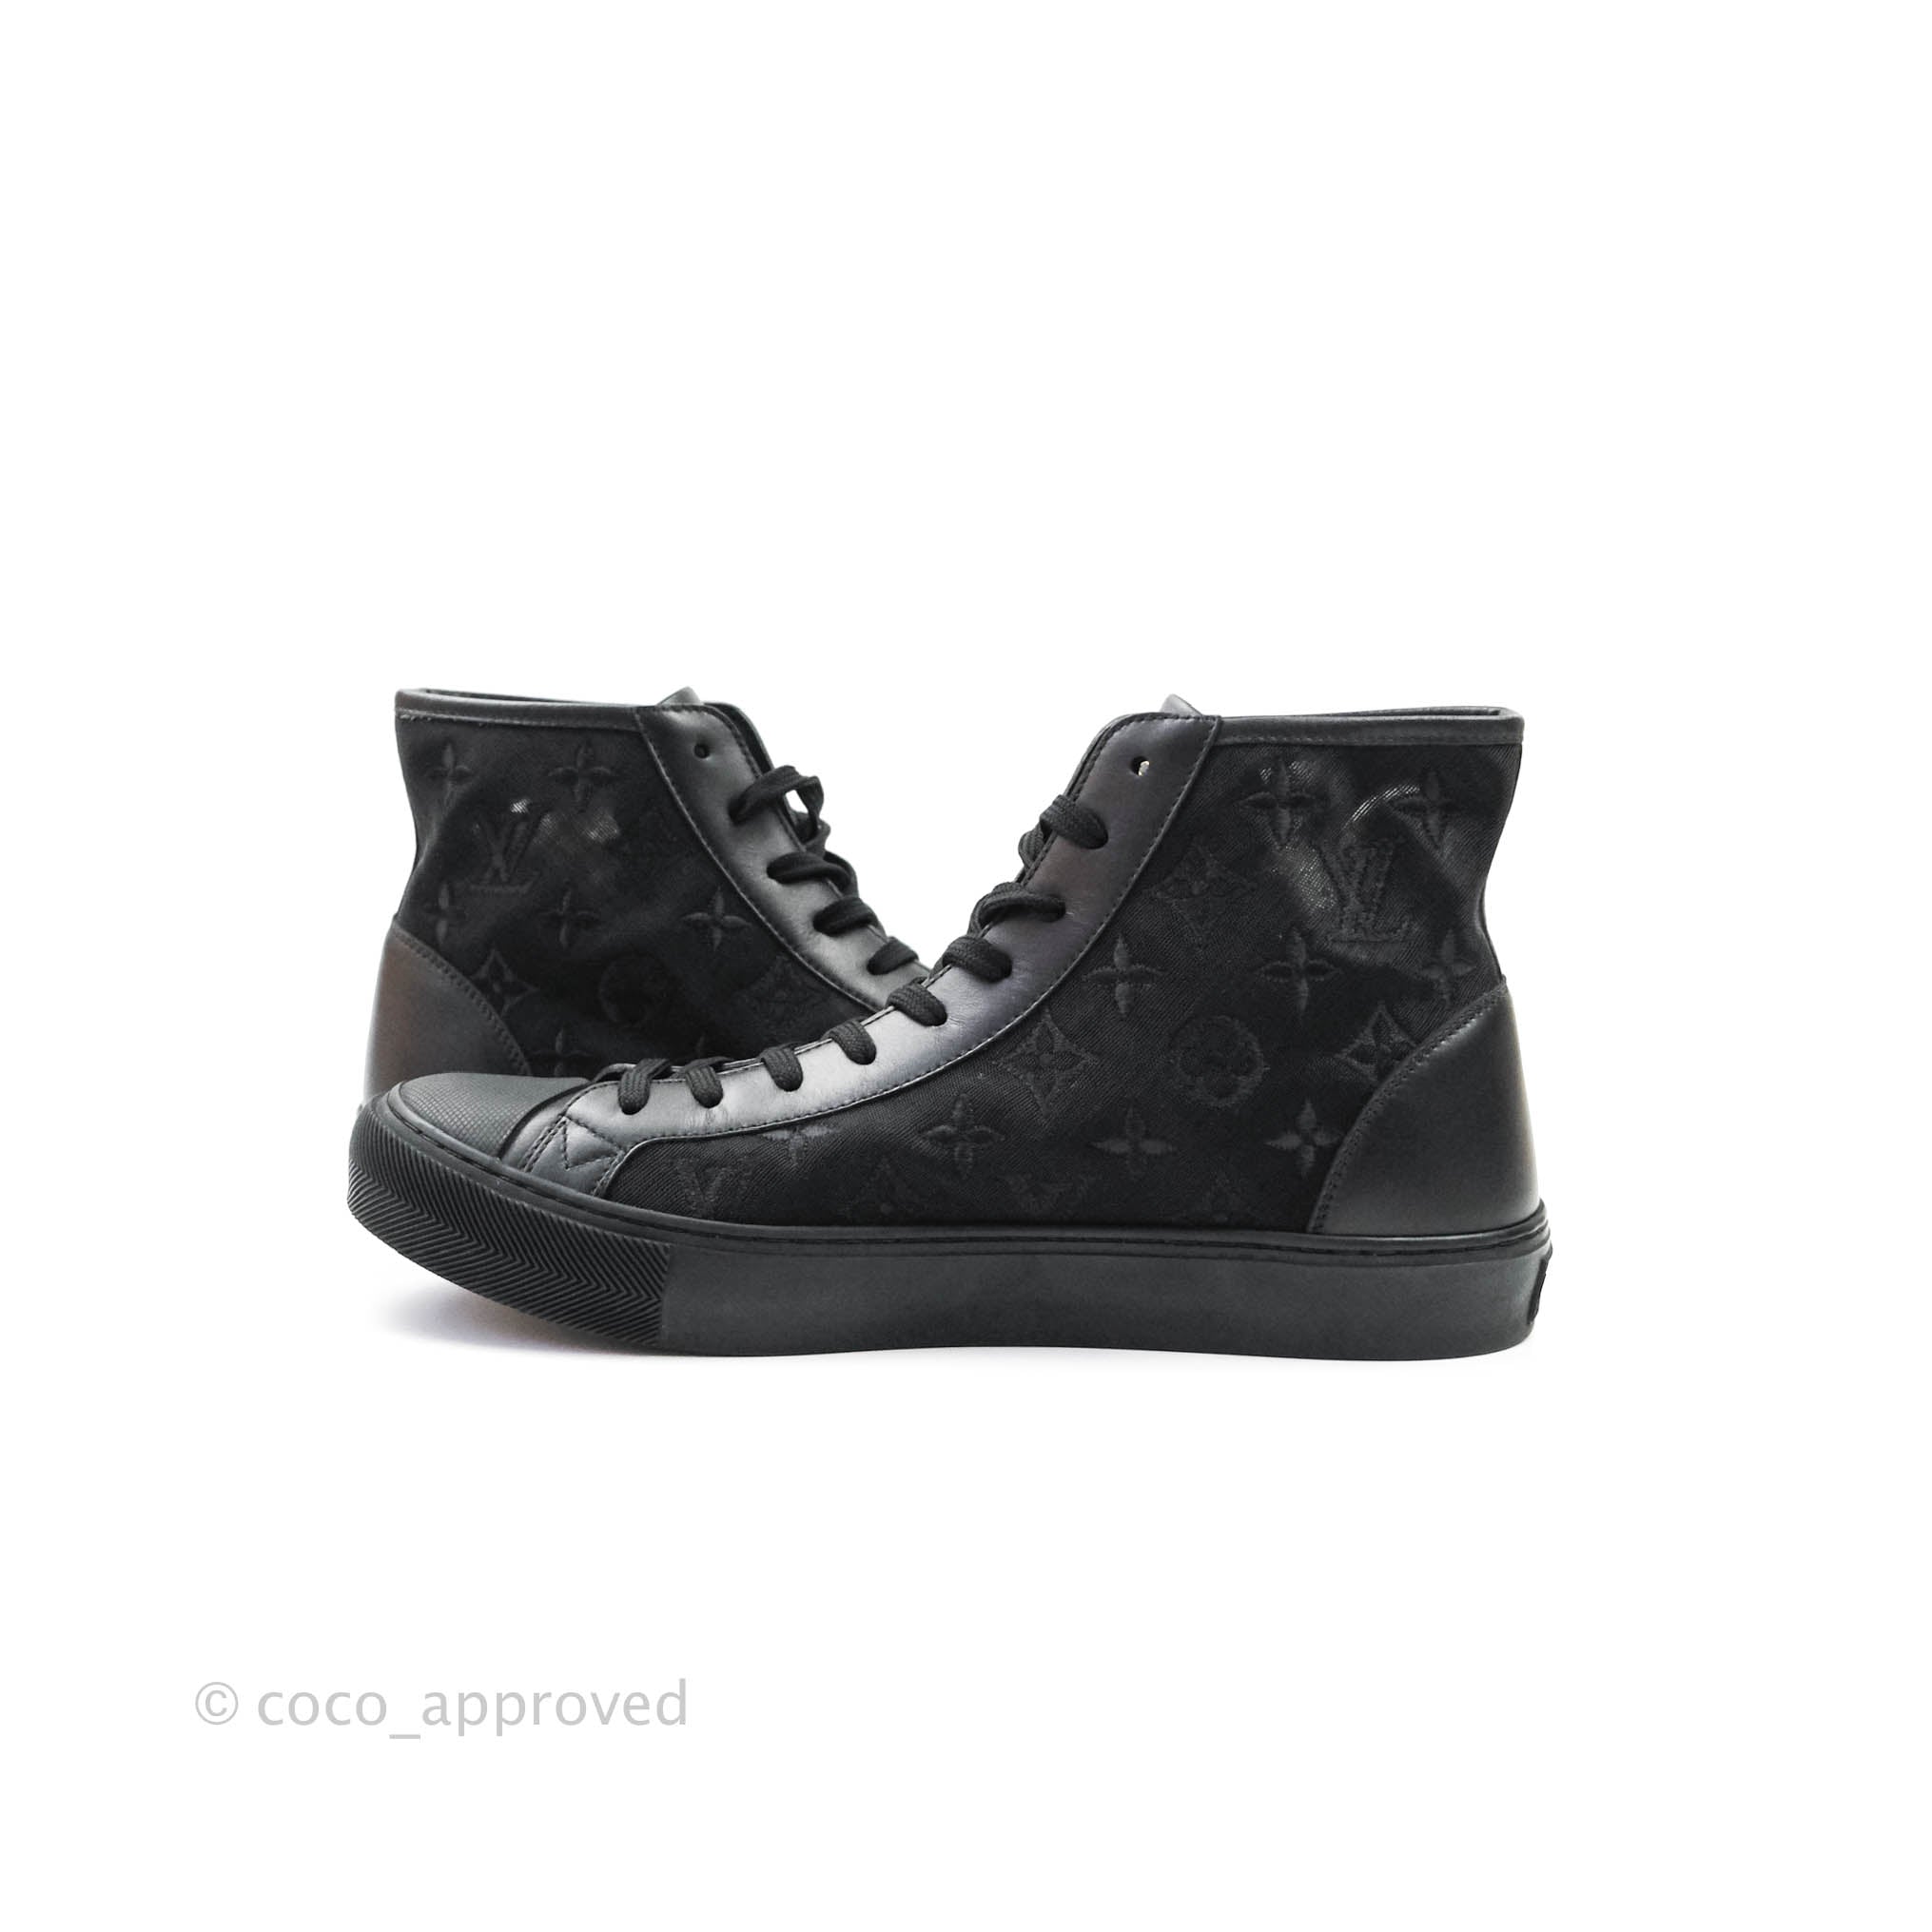 Louis Vuitton Stellar Sneaker Boot